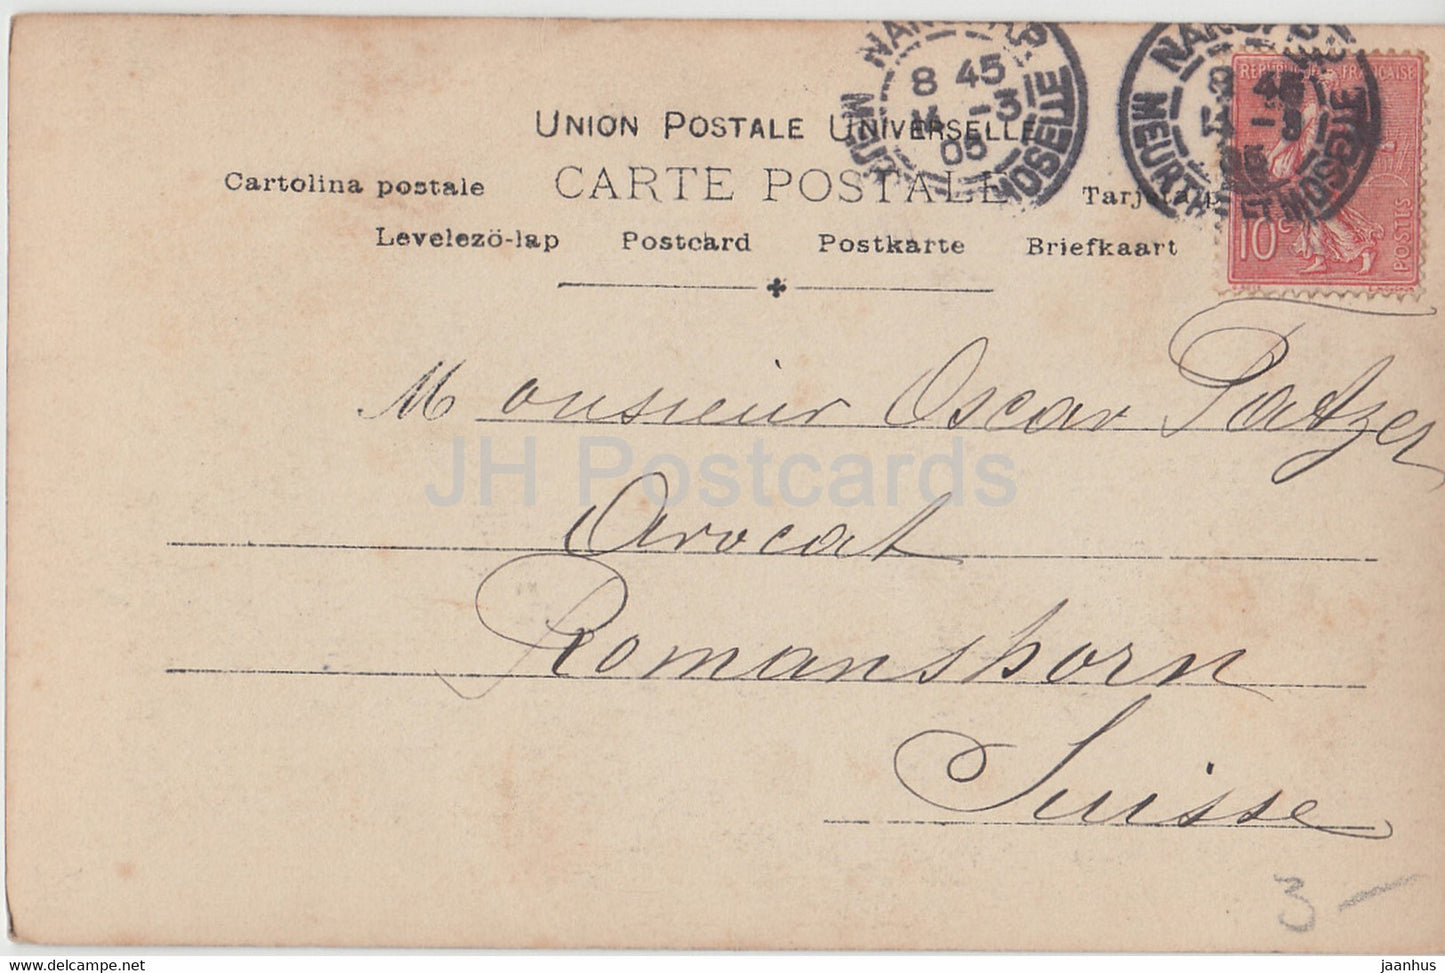 Danseuse française et Vedette Liane de Pougy - femme - ETE - Reutlinger Paris - carte postale ancienne - 1905 - France - occasion